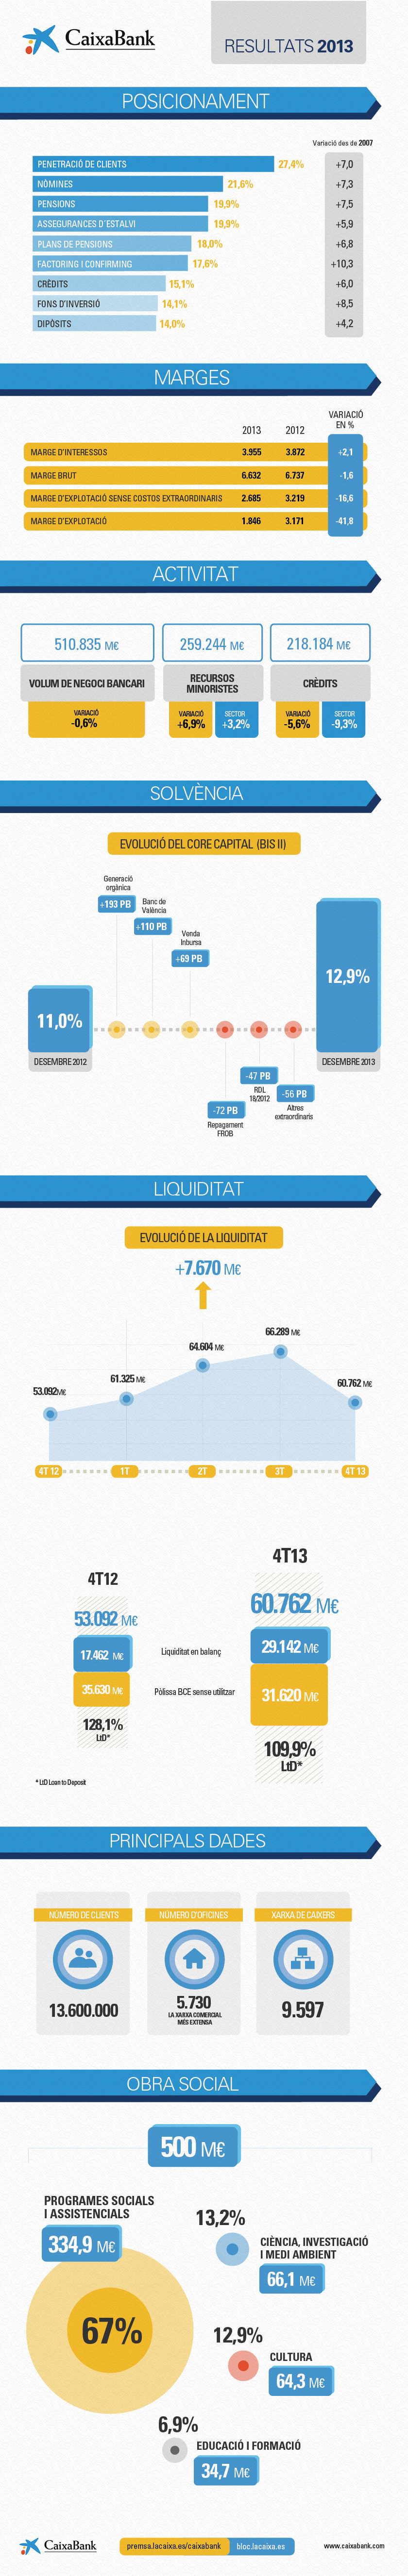 Infografia. Resultats de CaixaBank 2013